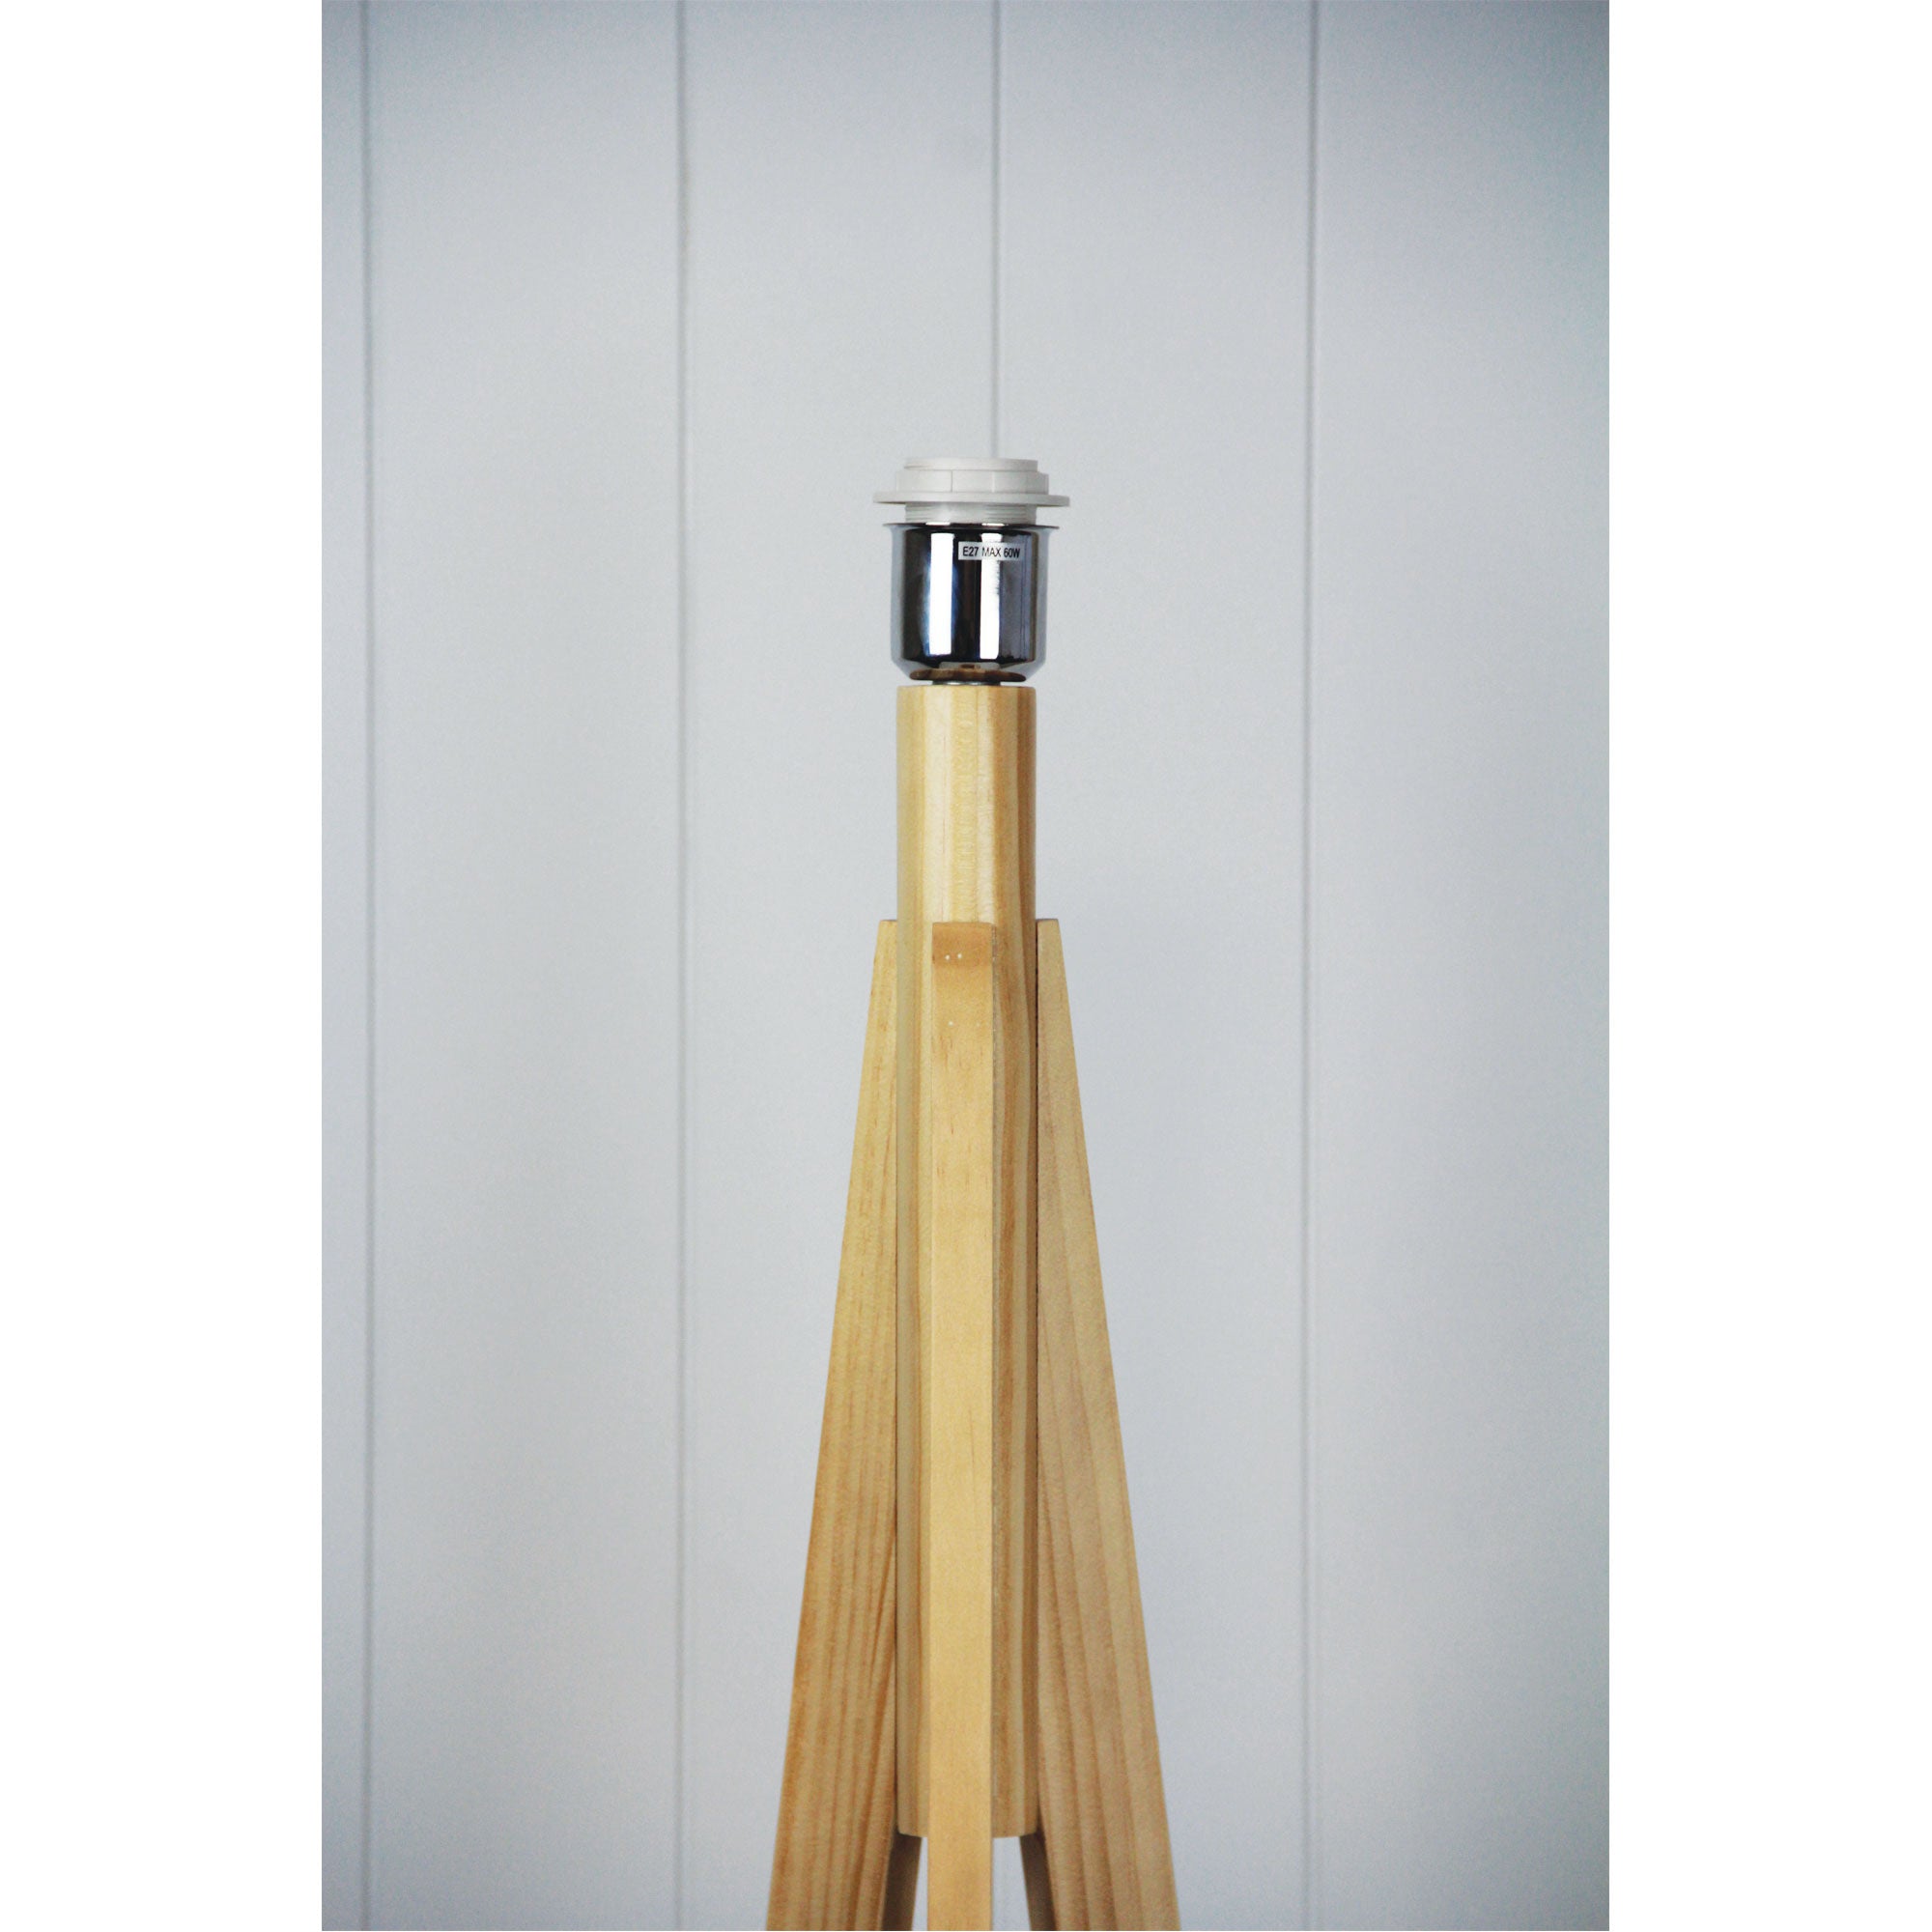 Buy Floor Lamps Australia Stabb 1 Light Floor Timber Tripod Lamp Base - OL93283NAT